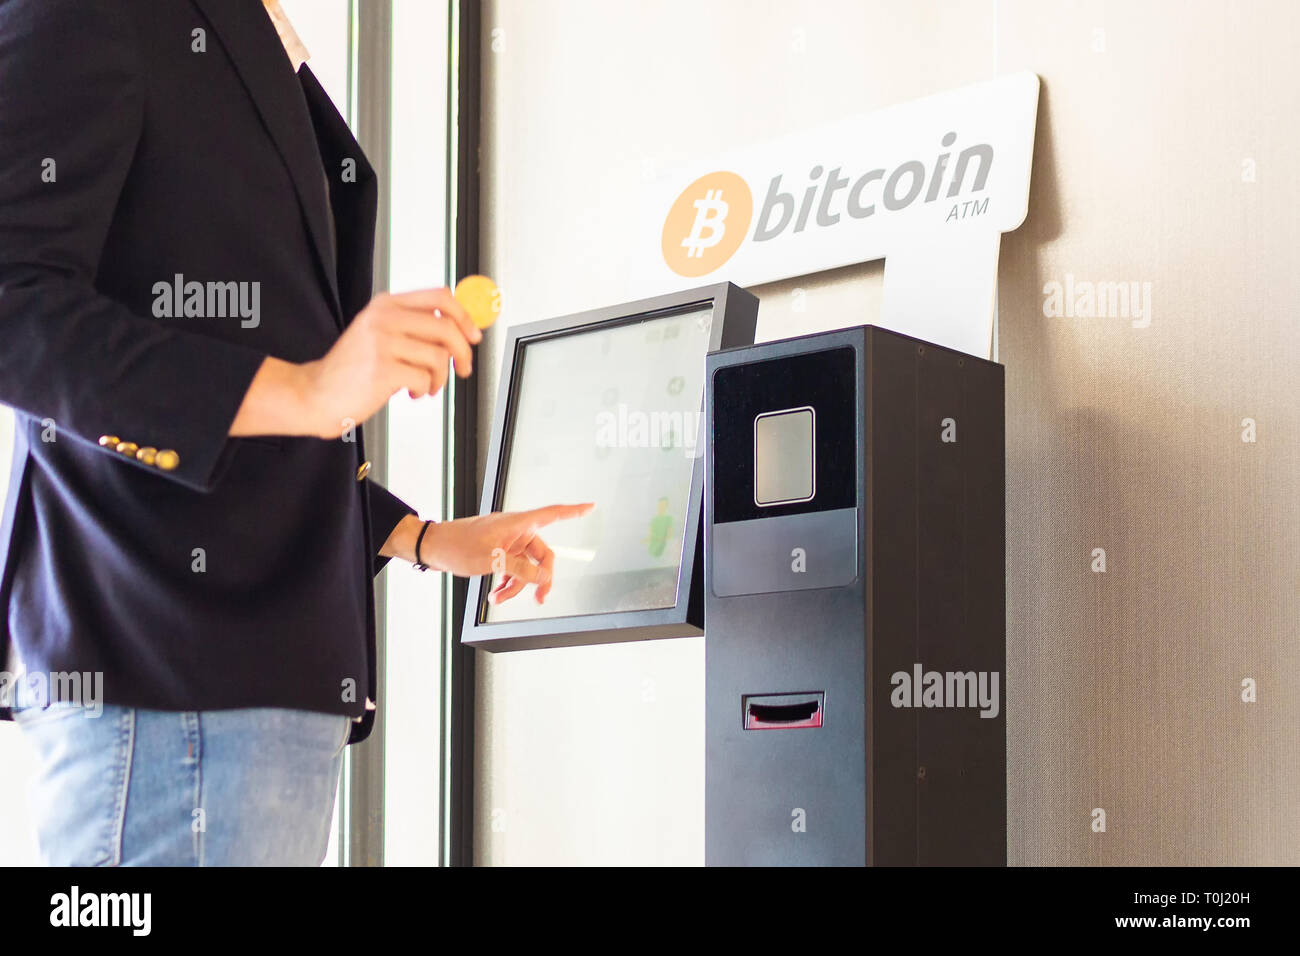 Bitcoin Geldautomaten durch Unternehmer für den Kauf cryptocurrency und andere altcoins verwendet Stockfoto